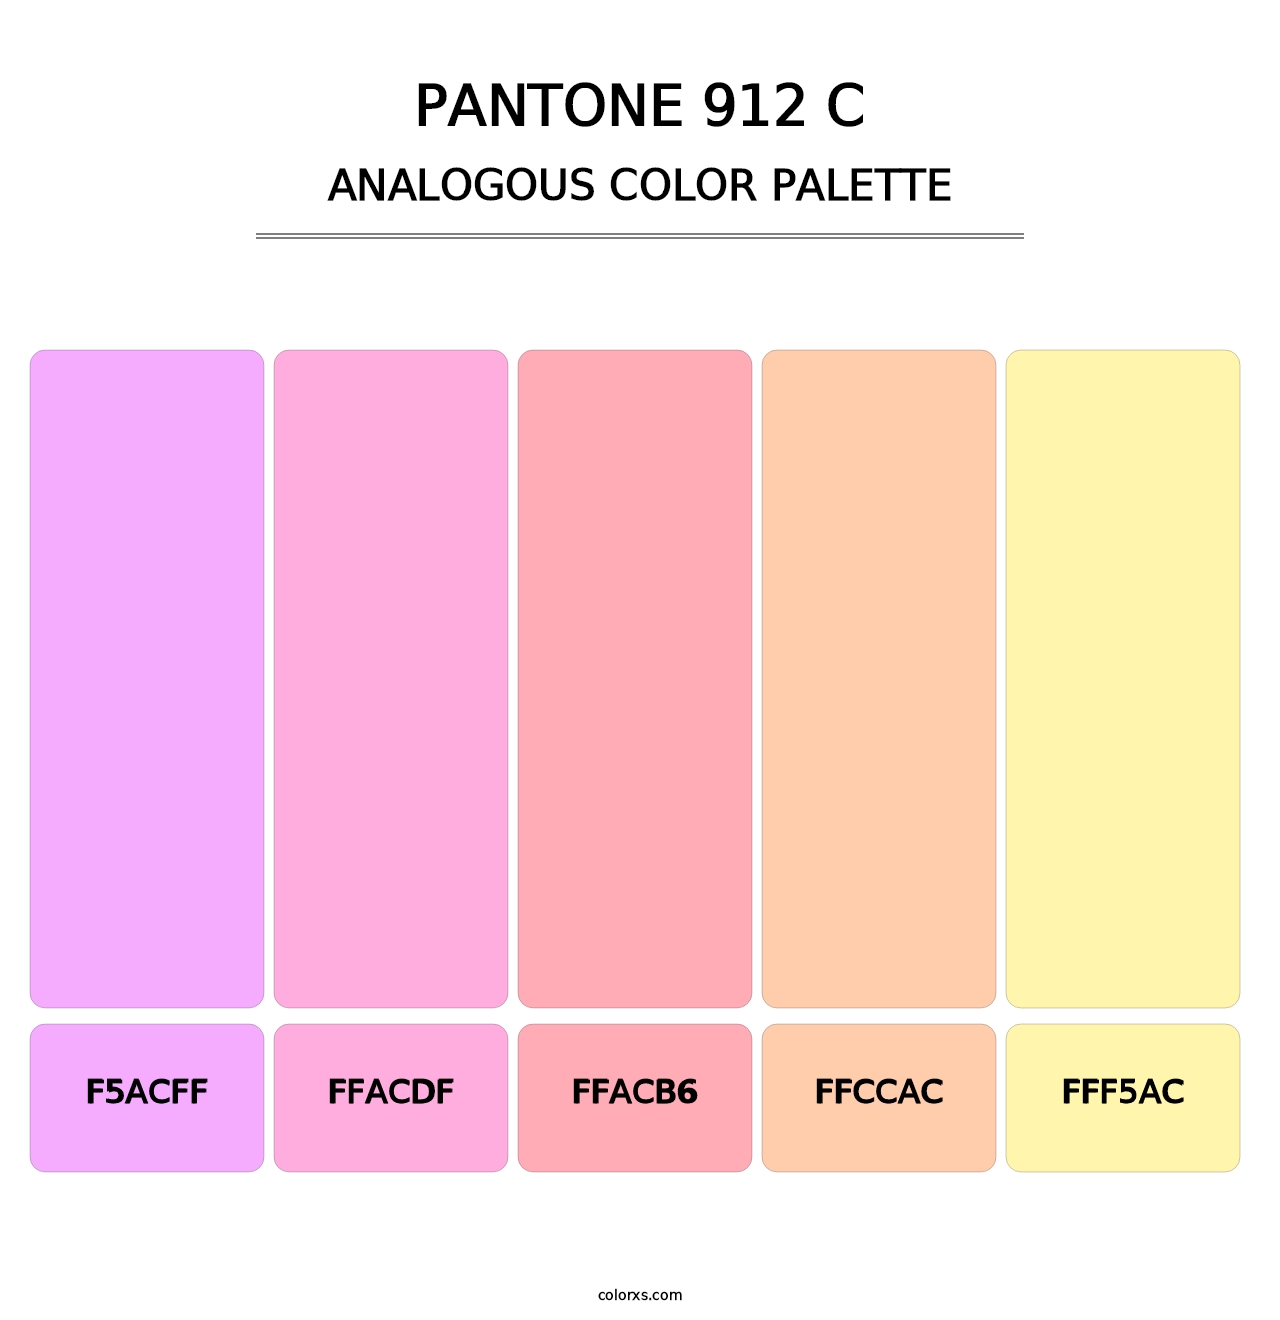 PANTONE 912 C - Analogous Color Palette